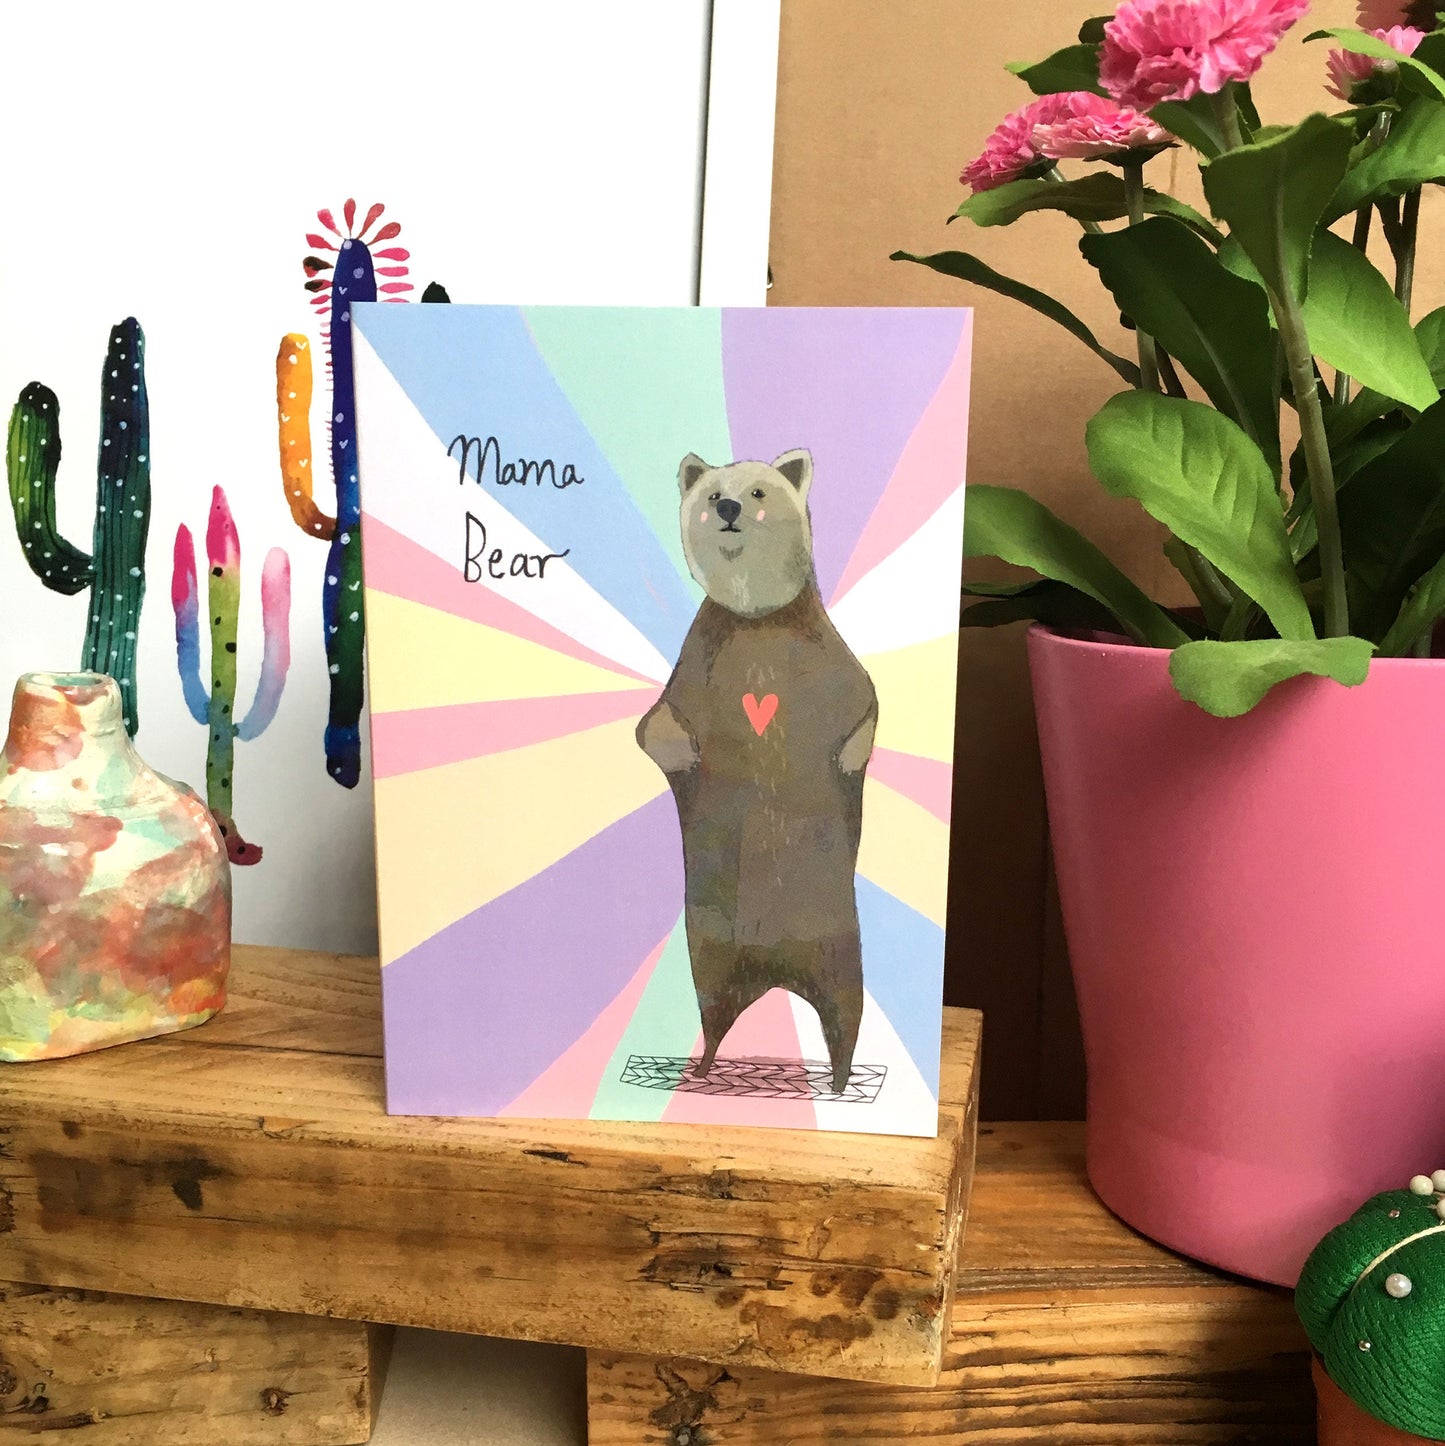 Mama bear card